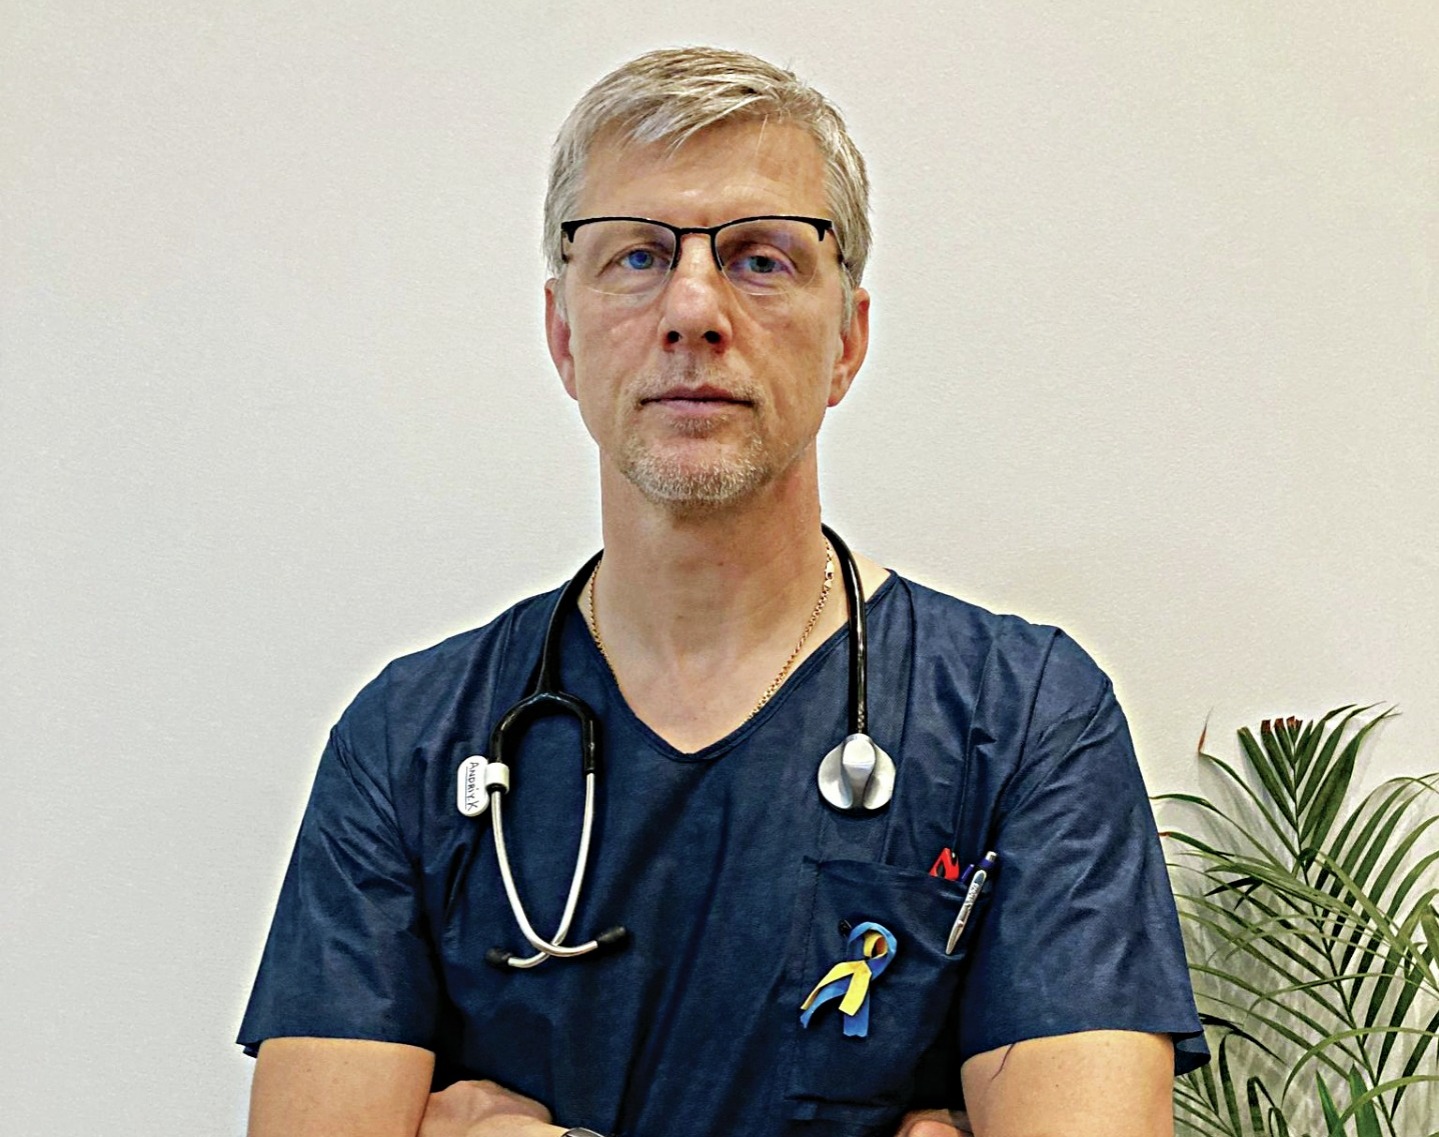 Médico ucraniano no Algarve Andriy junta ‘primeiros socorros’ para hospitais de Lviv